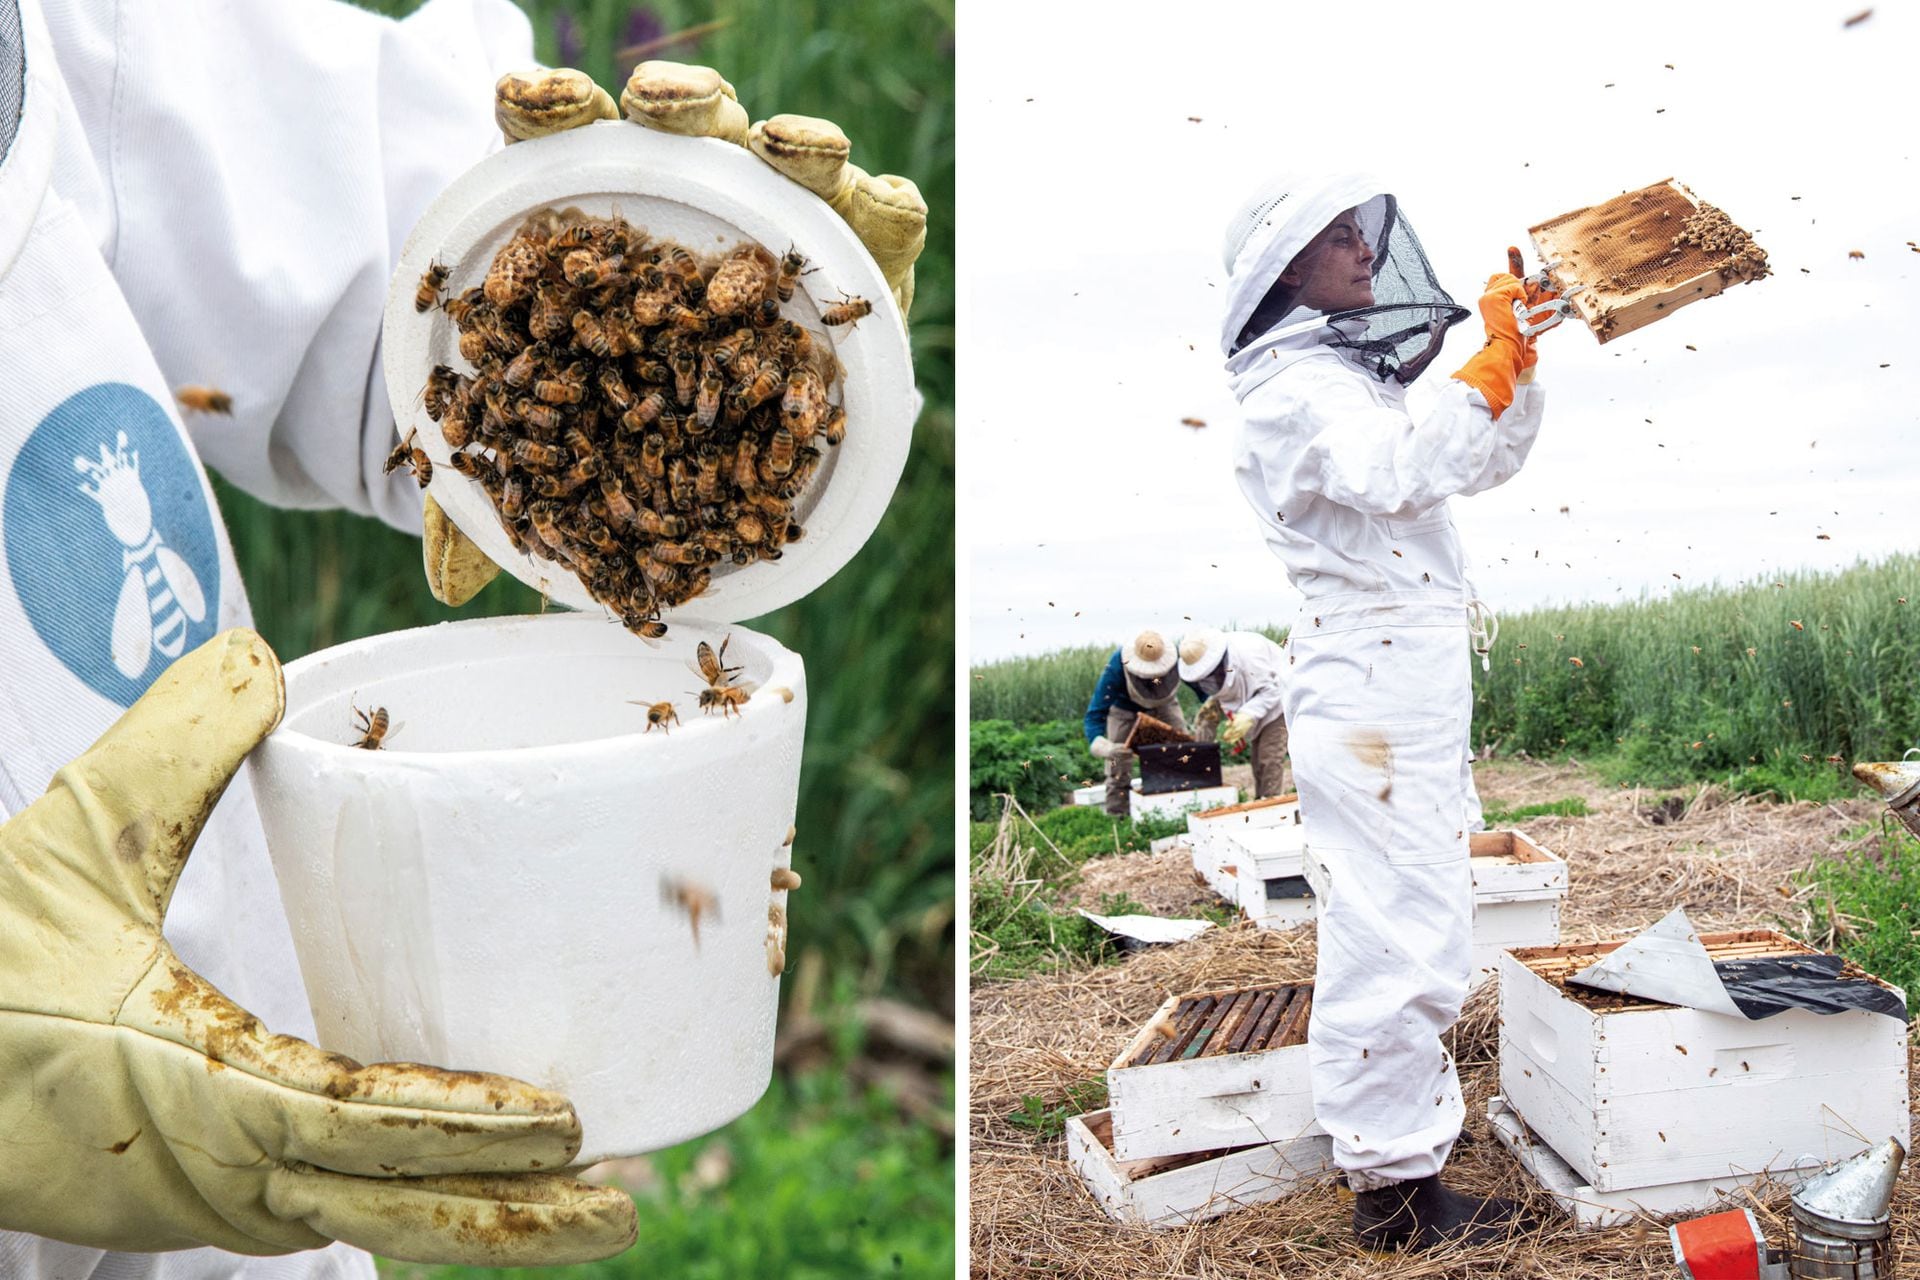 Izquierda: El grupo Reinas formó también un criadero de abejas reinas y celdas reales. Derecha: María Casquero, apicultora que forma parte del grupo Reinas Pehuajó.